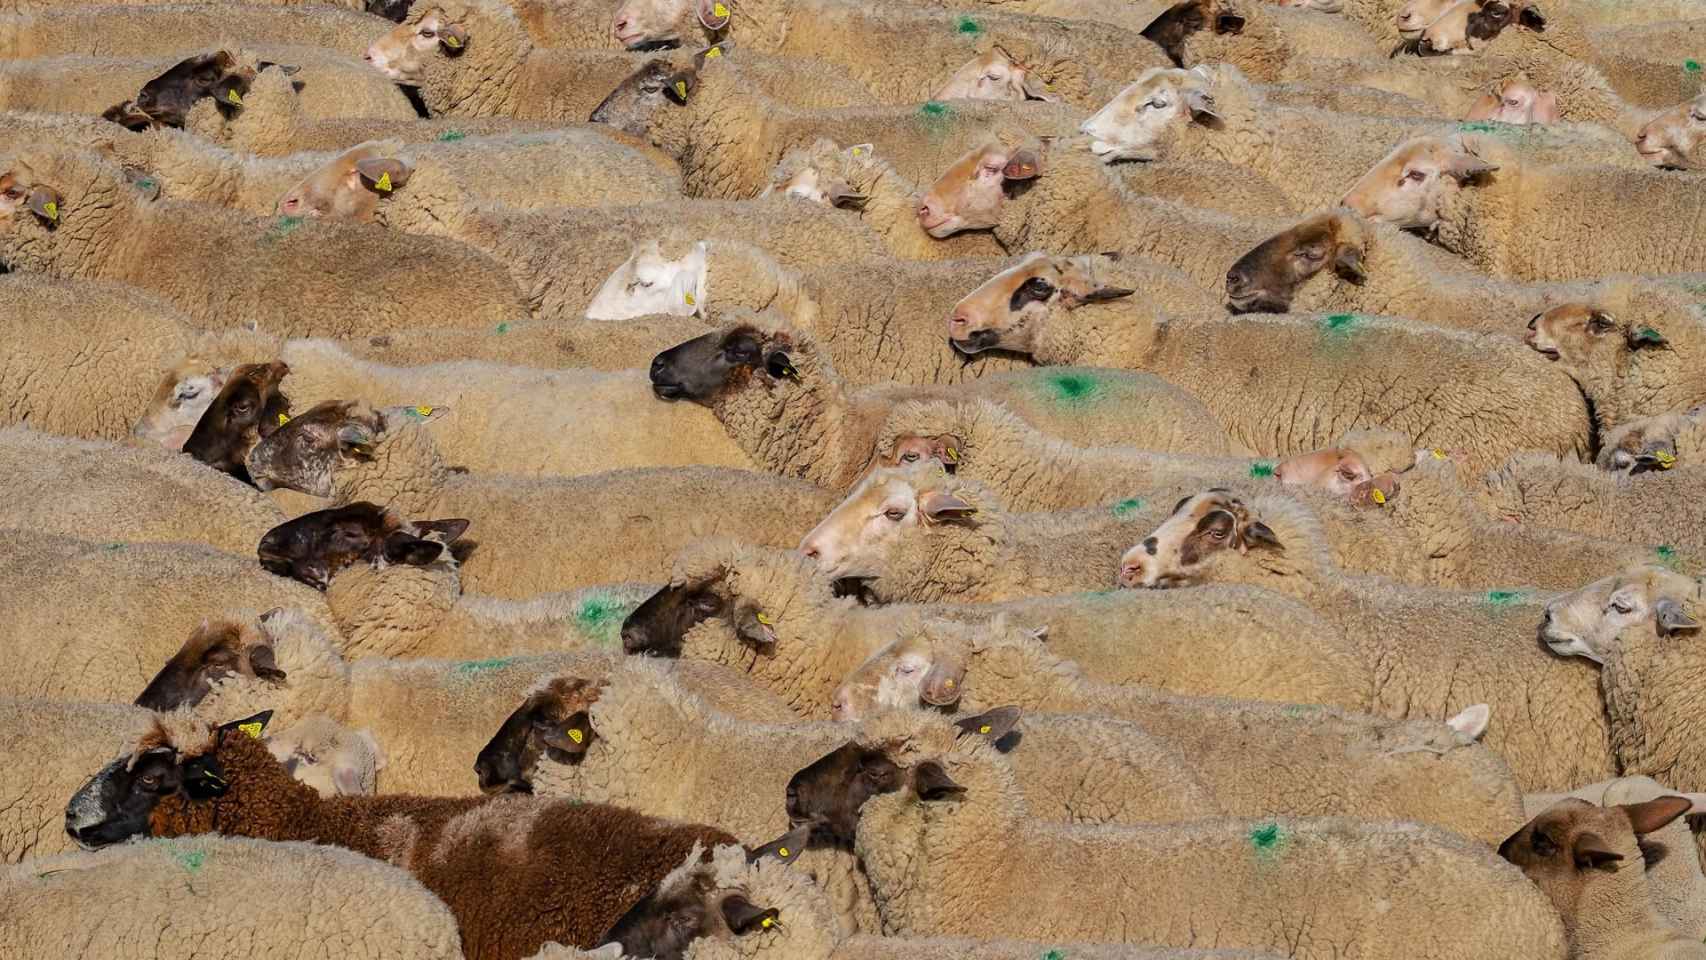 Un rebaño de ovejas en una explotación ganadera. / PIXABAY